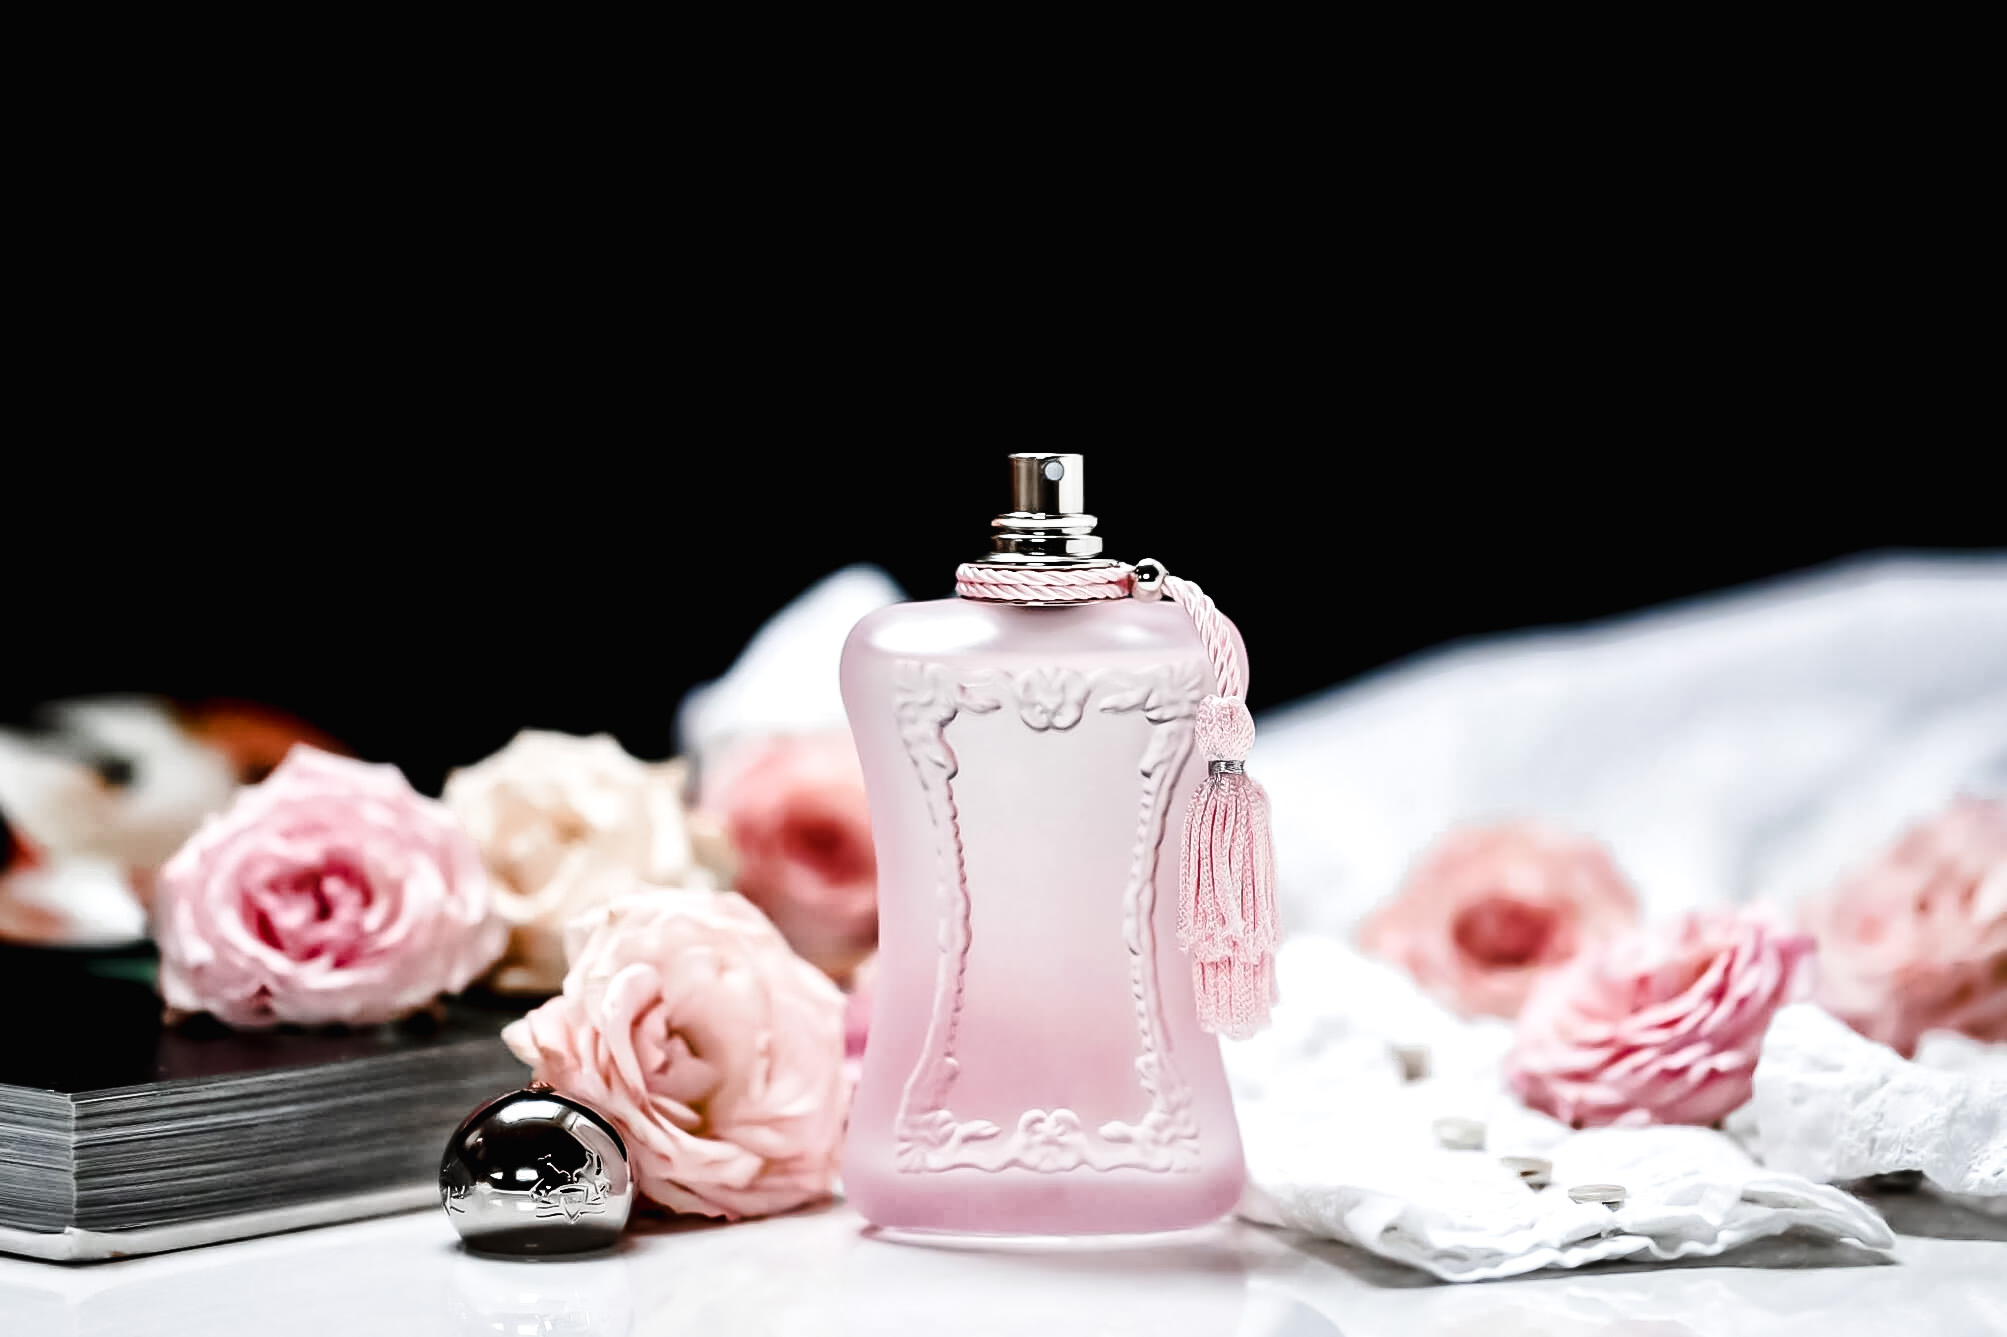 Delina La Rosée Parfums de Marly